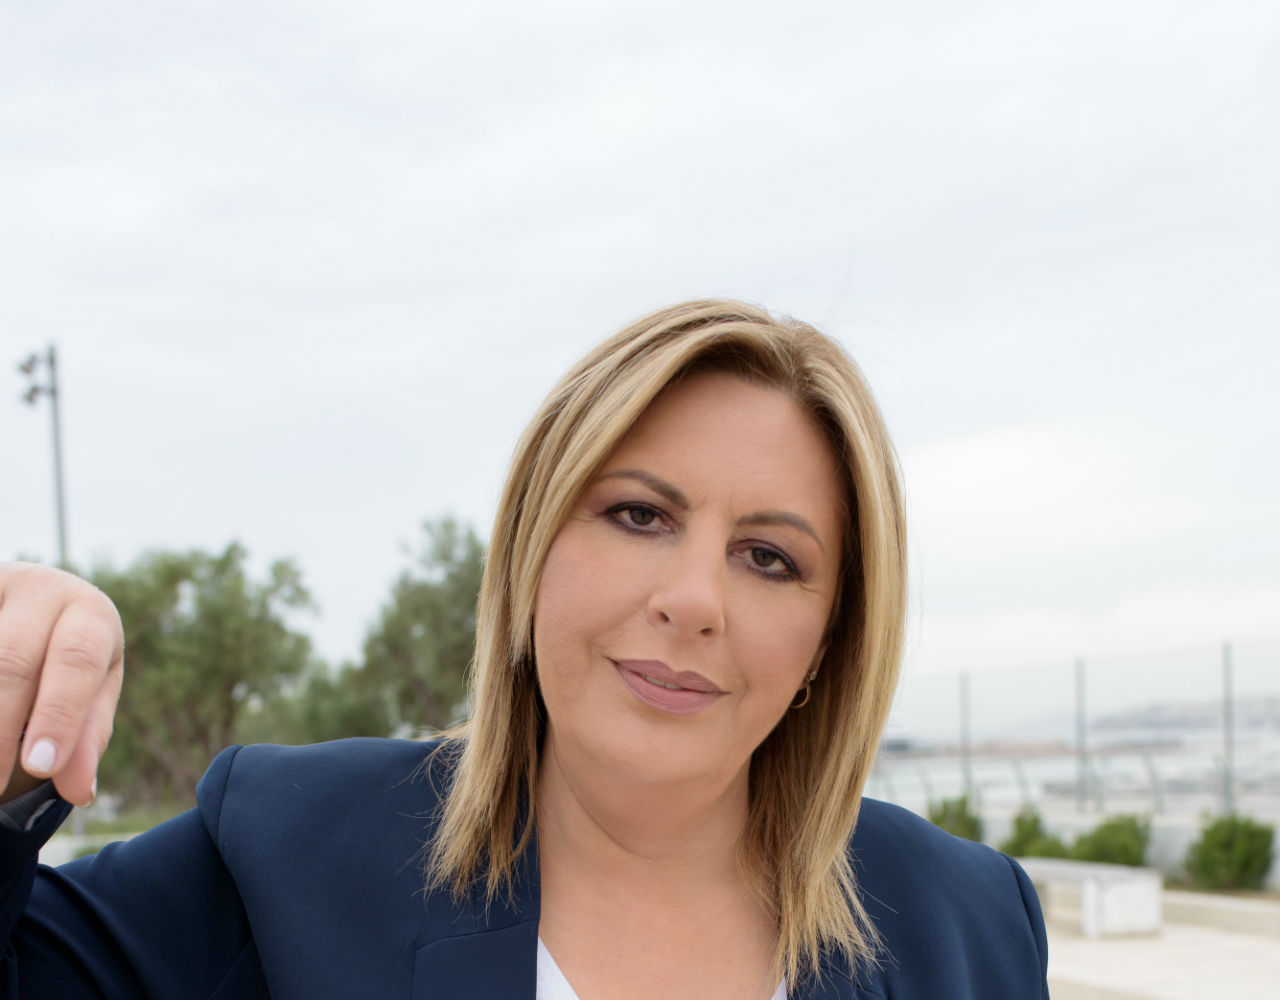 Ντόρα Πάλλη: “Στόχος μας είναι να κάνουμε το Ελληνικό πυλώνα ανάπτυξης της περιοχής και πάροχο εργασίας για εκατοντάδες κατοίκους των Νοτίων”